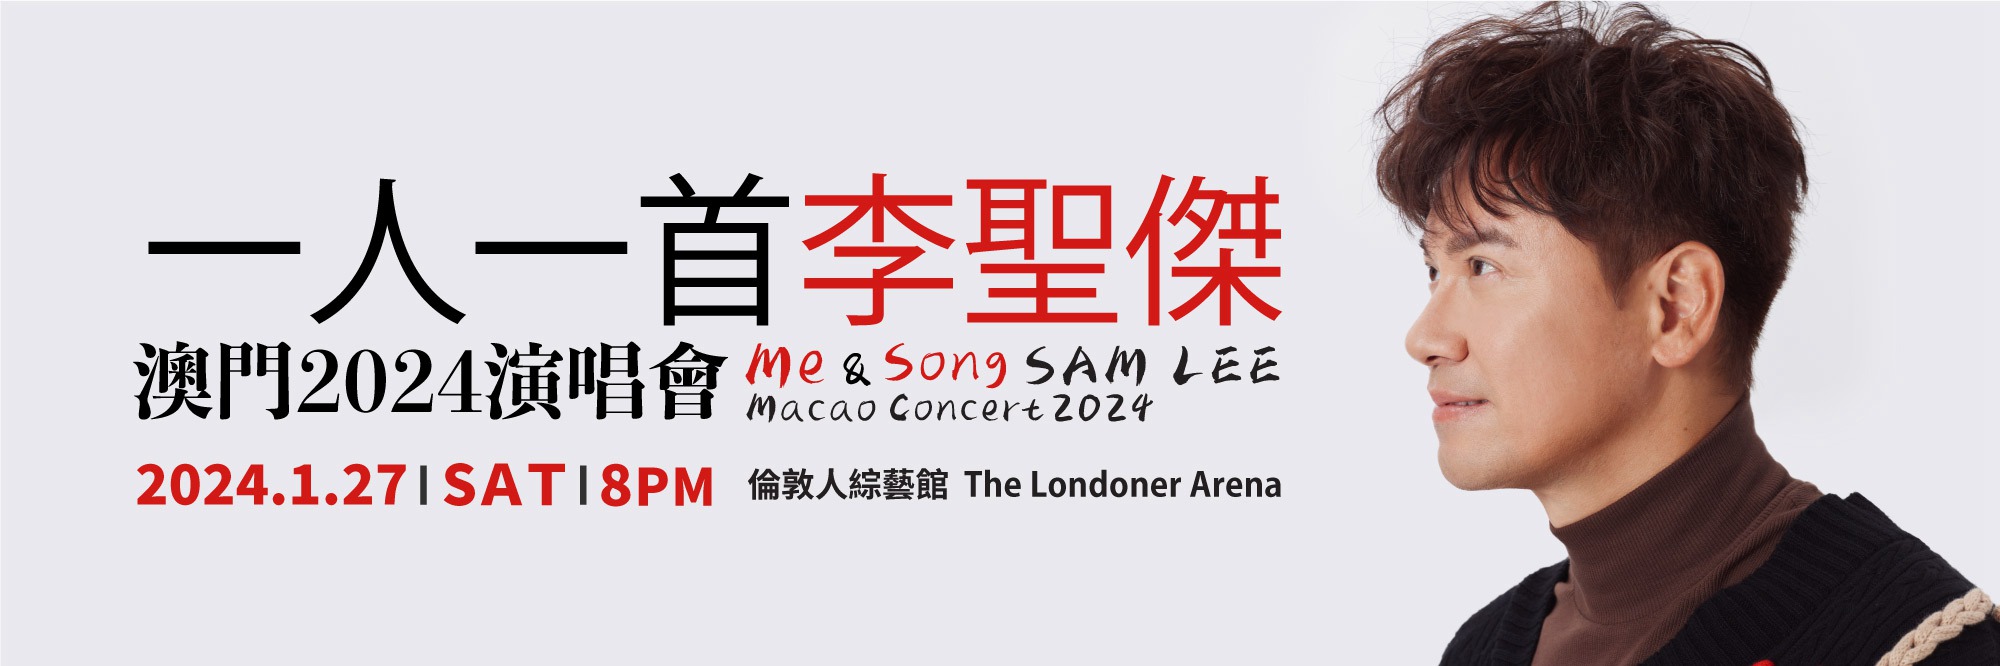 Me Song Sam Lee Macao Concert 2024 Banner 2000x666 En 